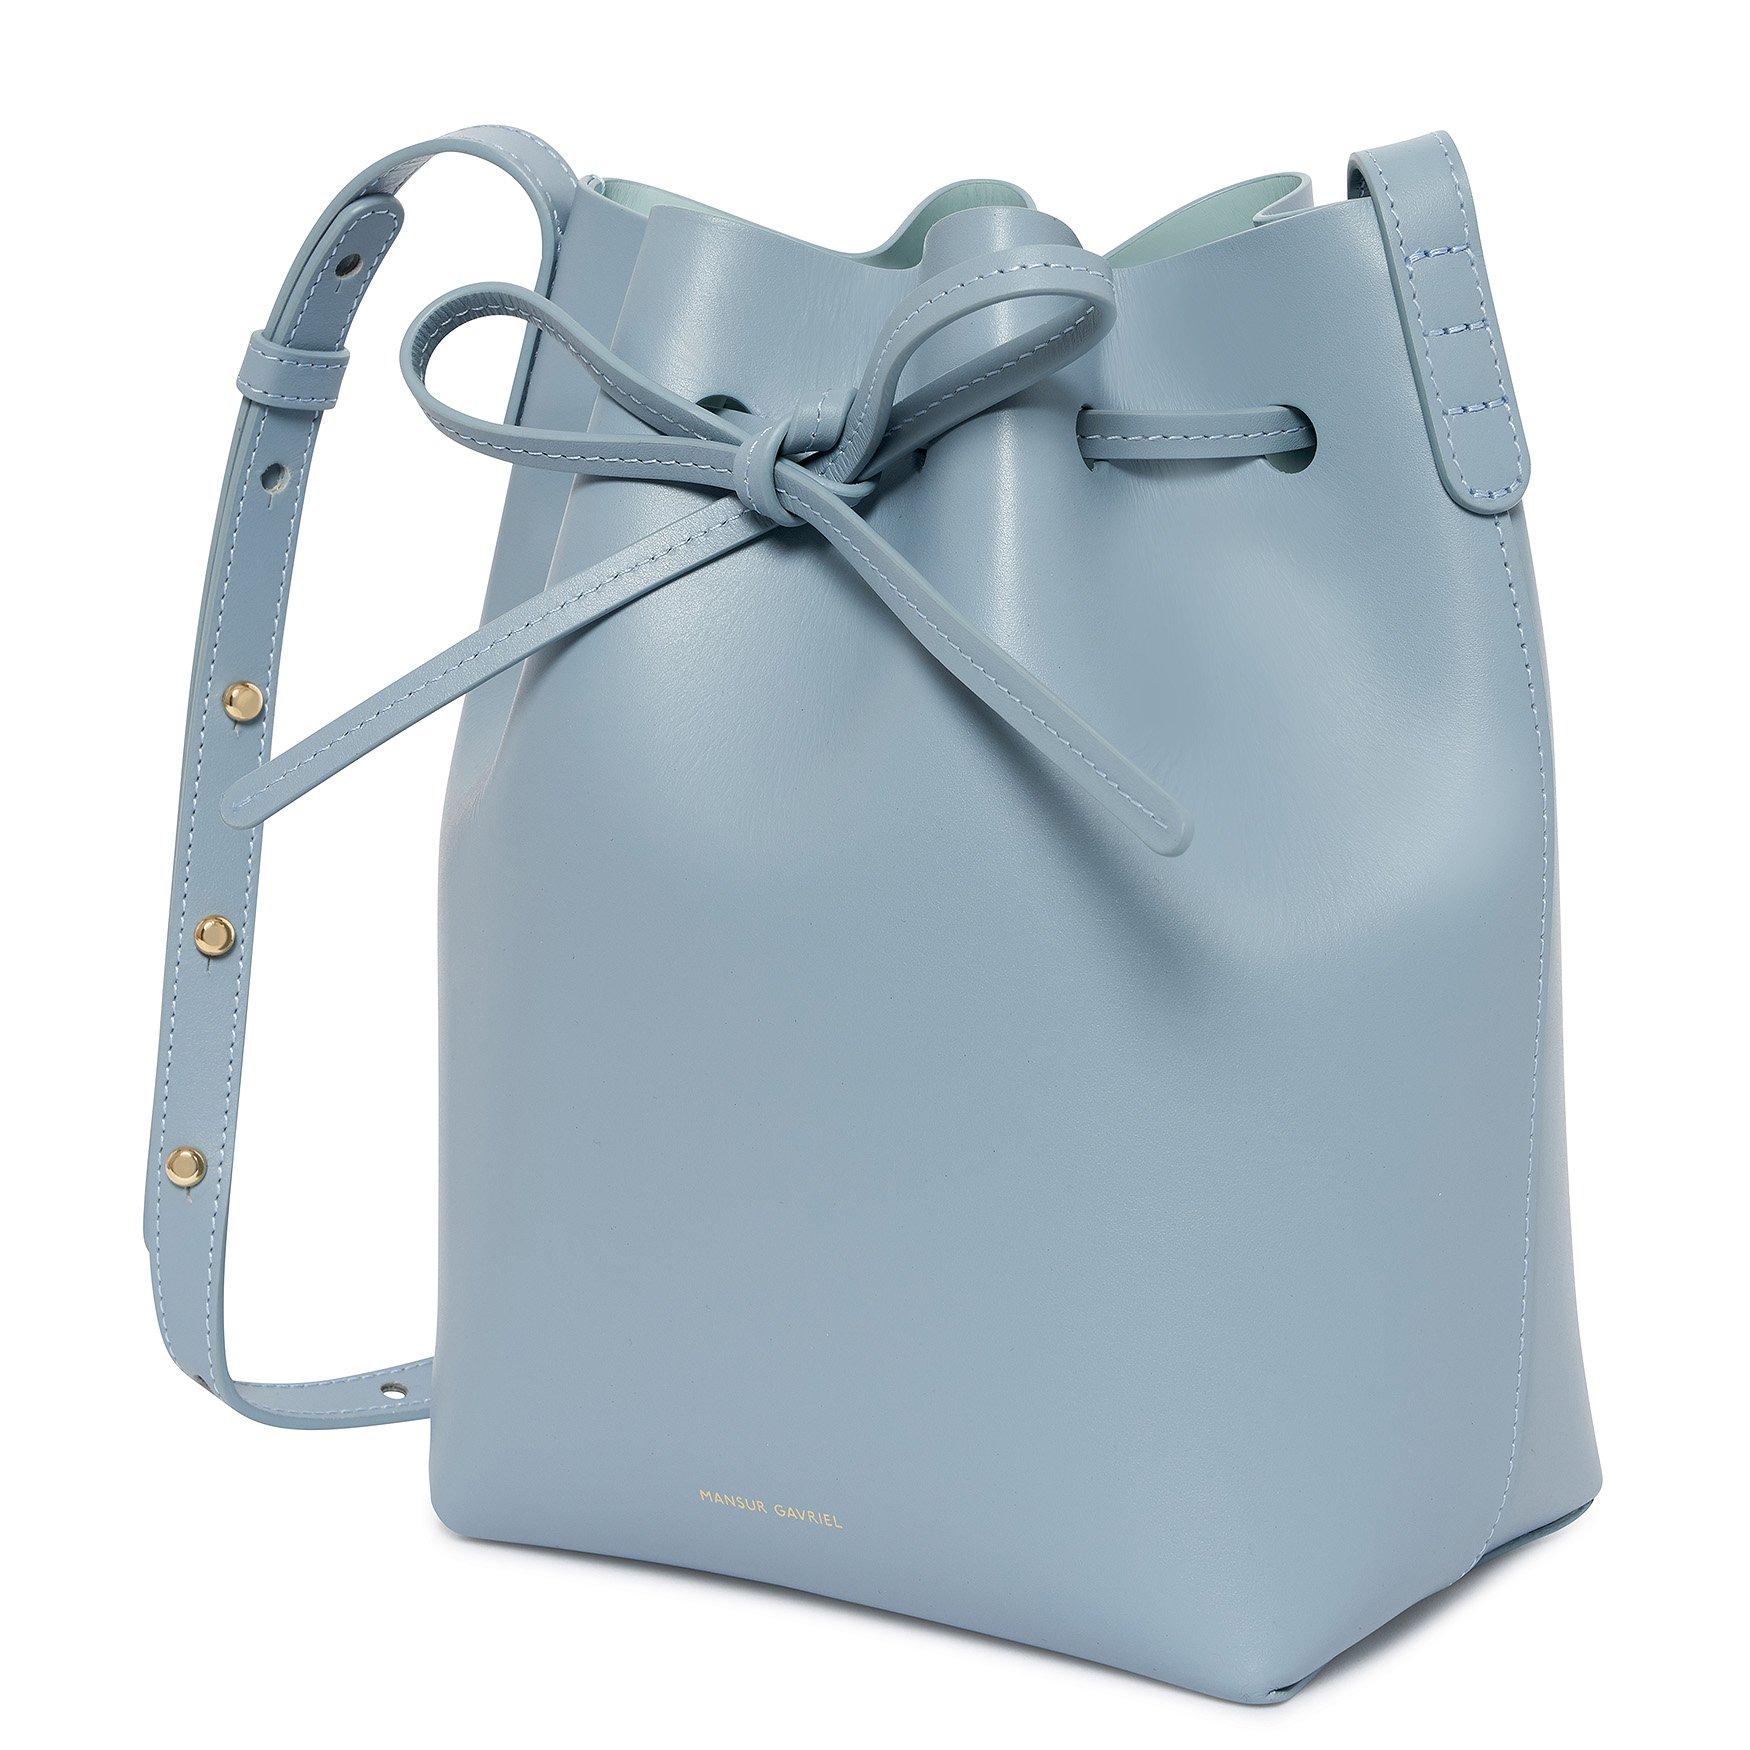 Mansur Gavriel Calf Mini Bucket Bag - Grey Blue in Blue - Lyst